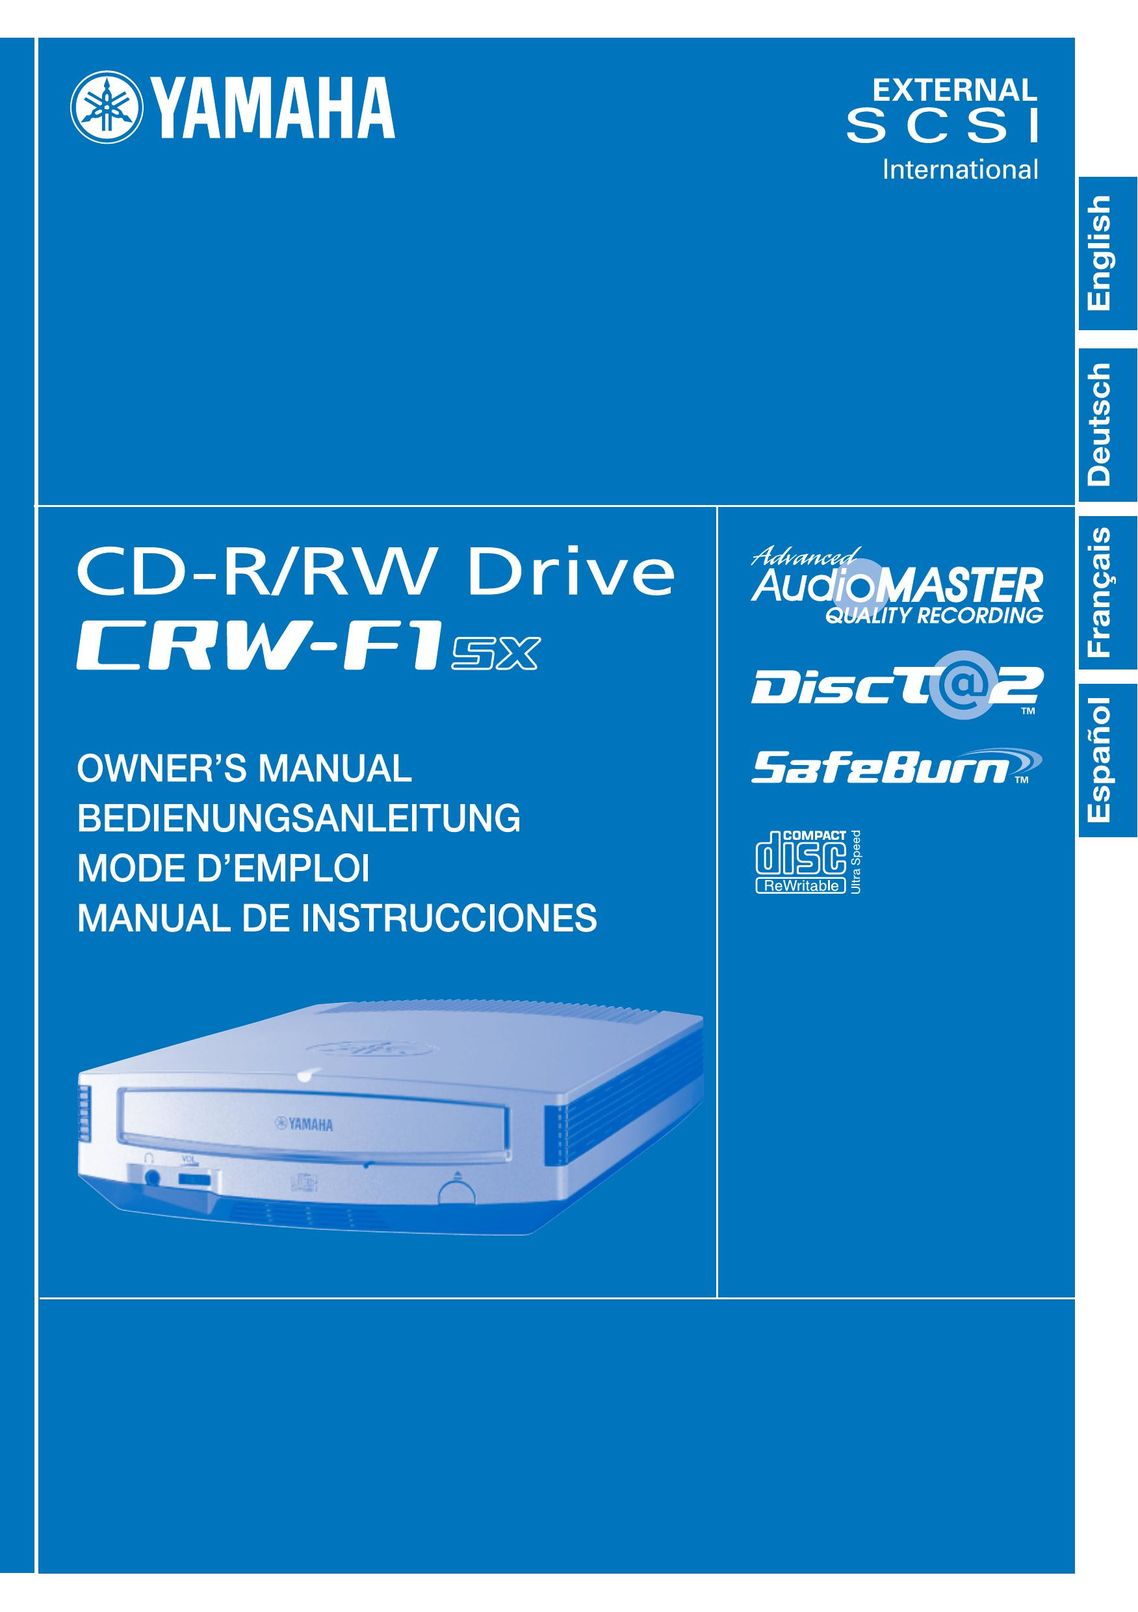 Yamaha CRW-F1SX Network Card User Manual